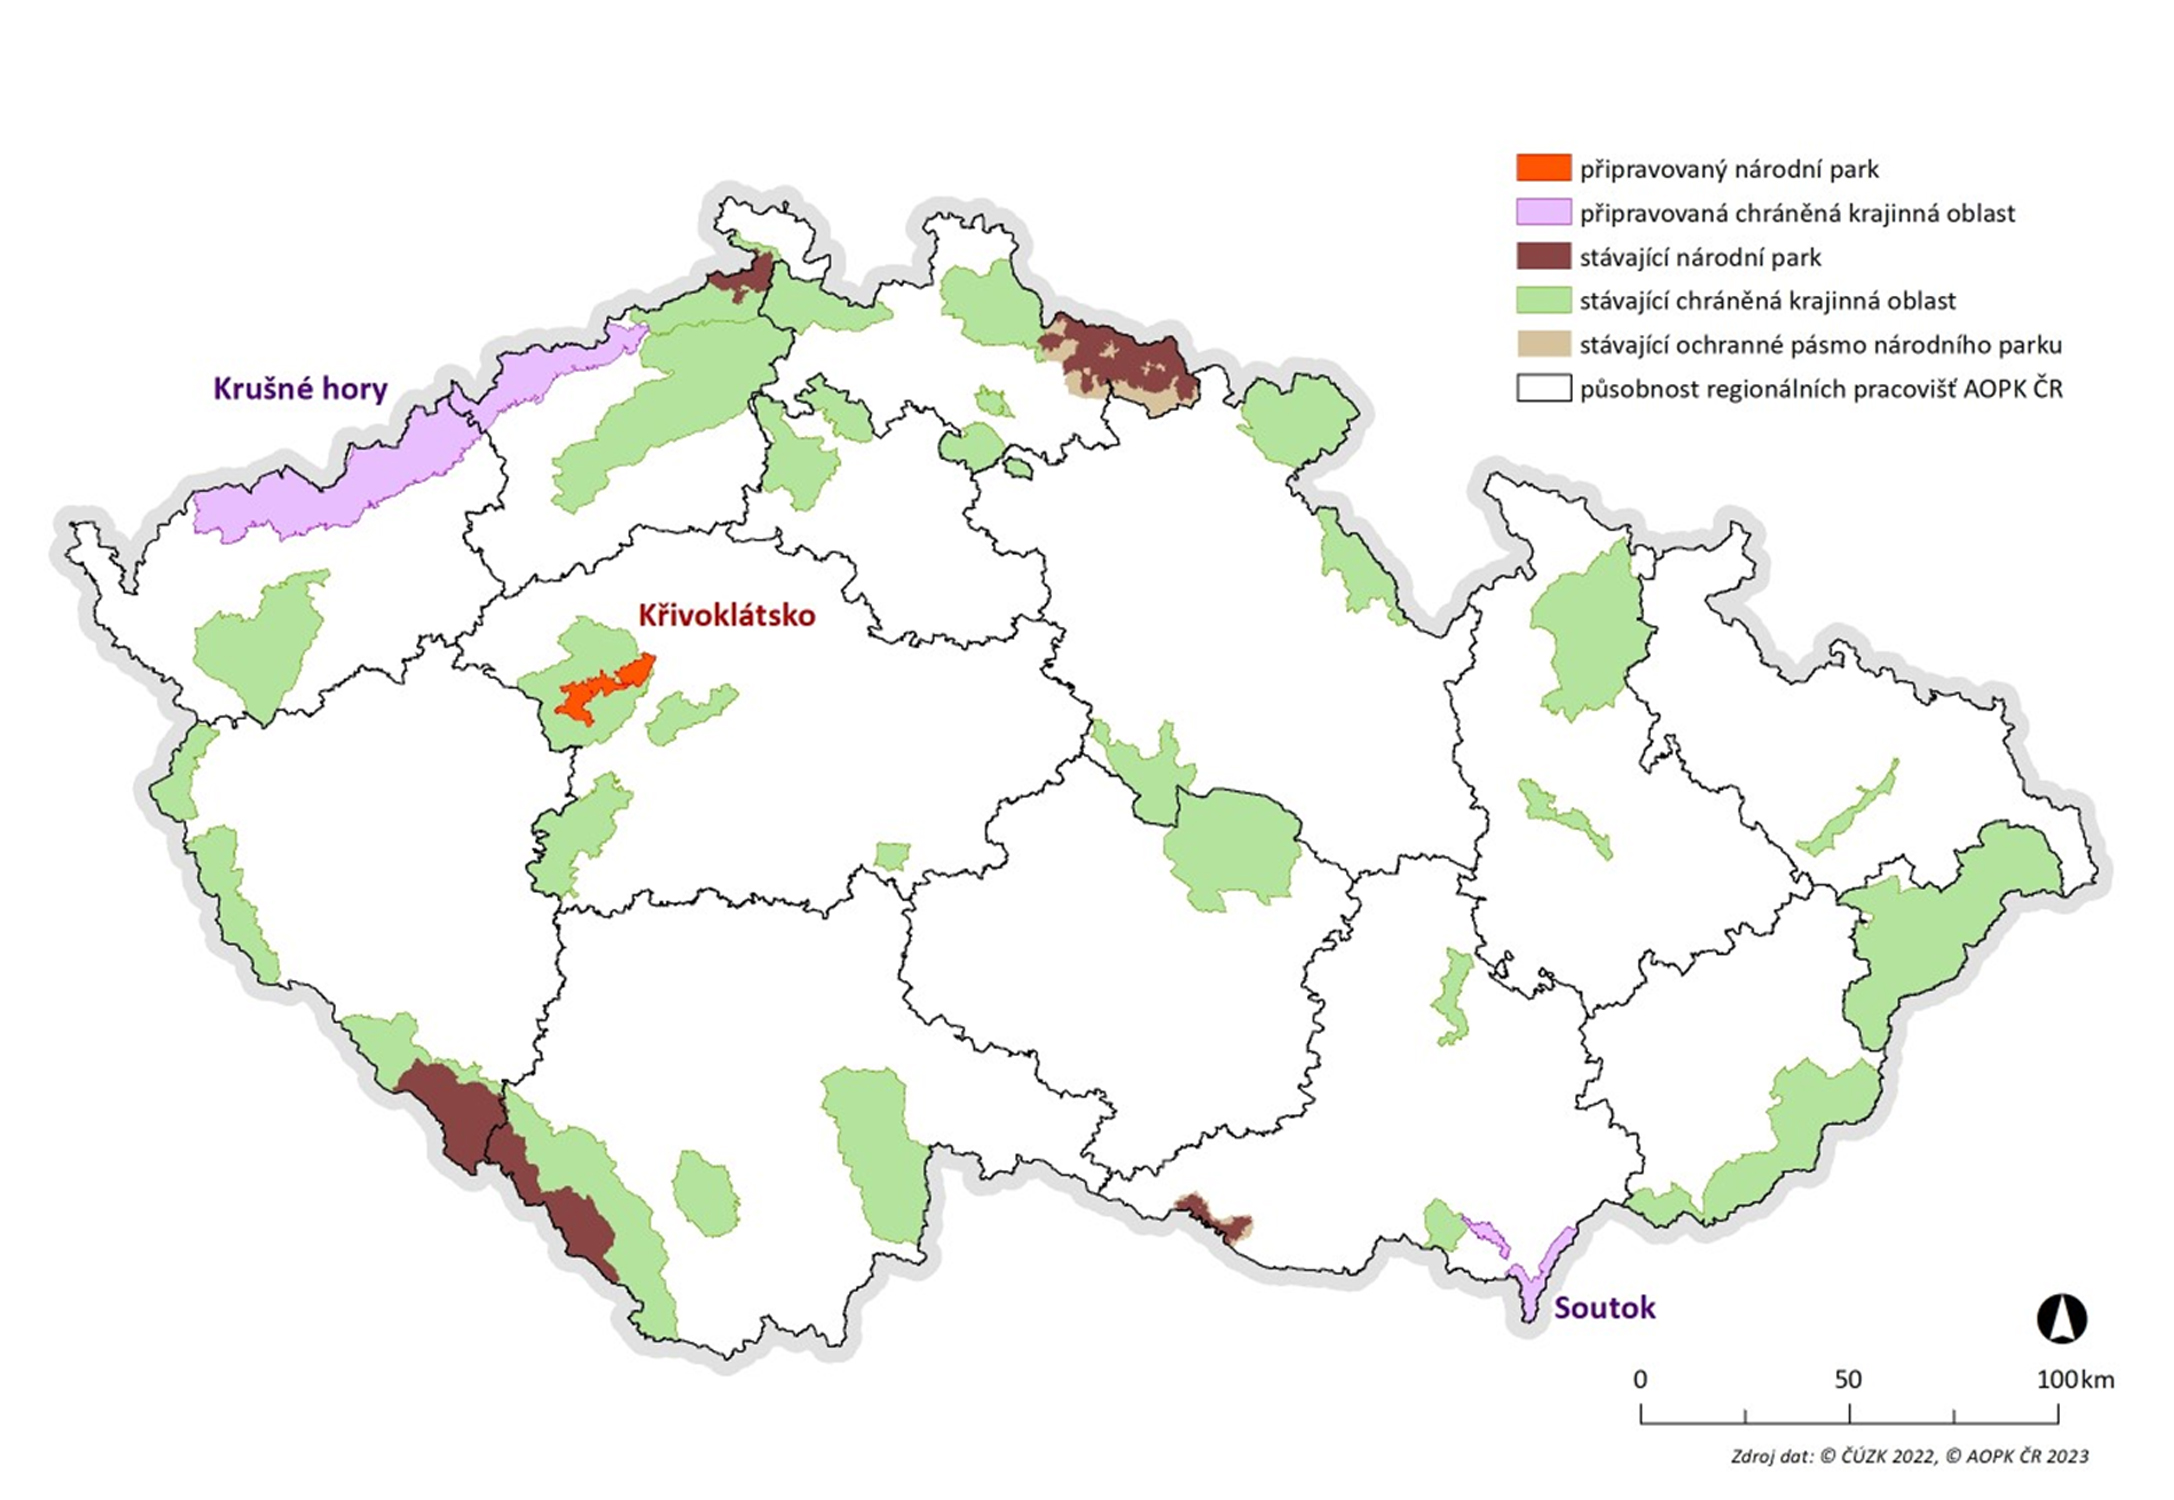 Obr. 1: Návrh chráněné krajinné oblasti Krušné hory v kontextu dalších velkoplošných chráněných území v České republice. Červeně je označen připravovaný národní park Křivoklátsko a fialově je doplněna vyhlašovaná chráněná krajinná oblast Soutok. AOPK ČR 2023